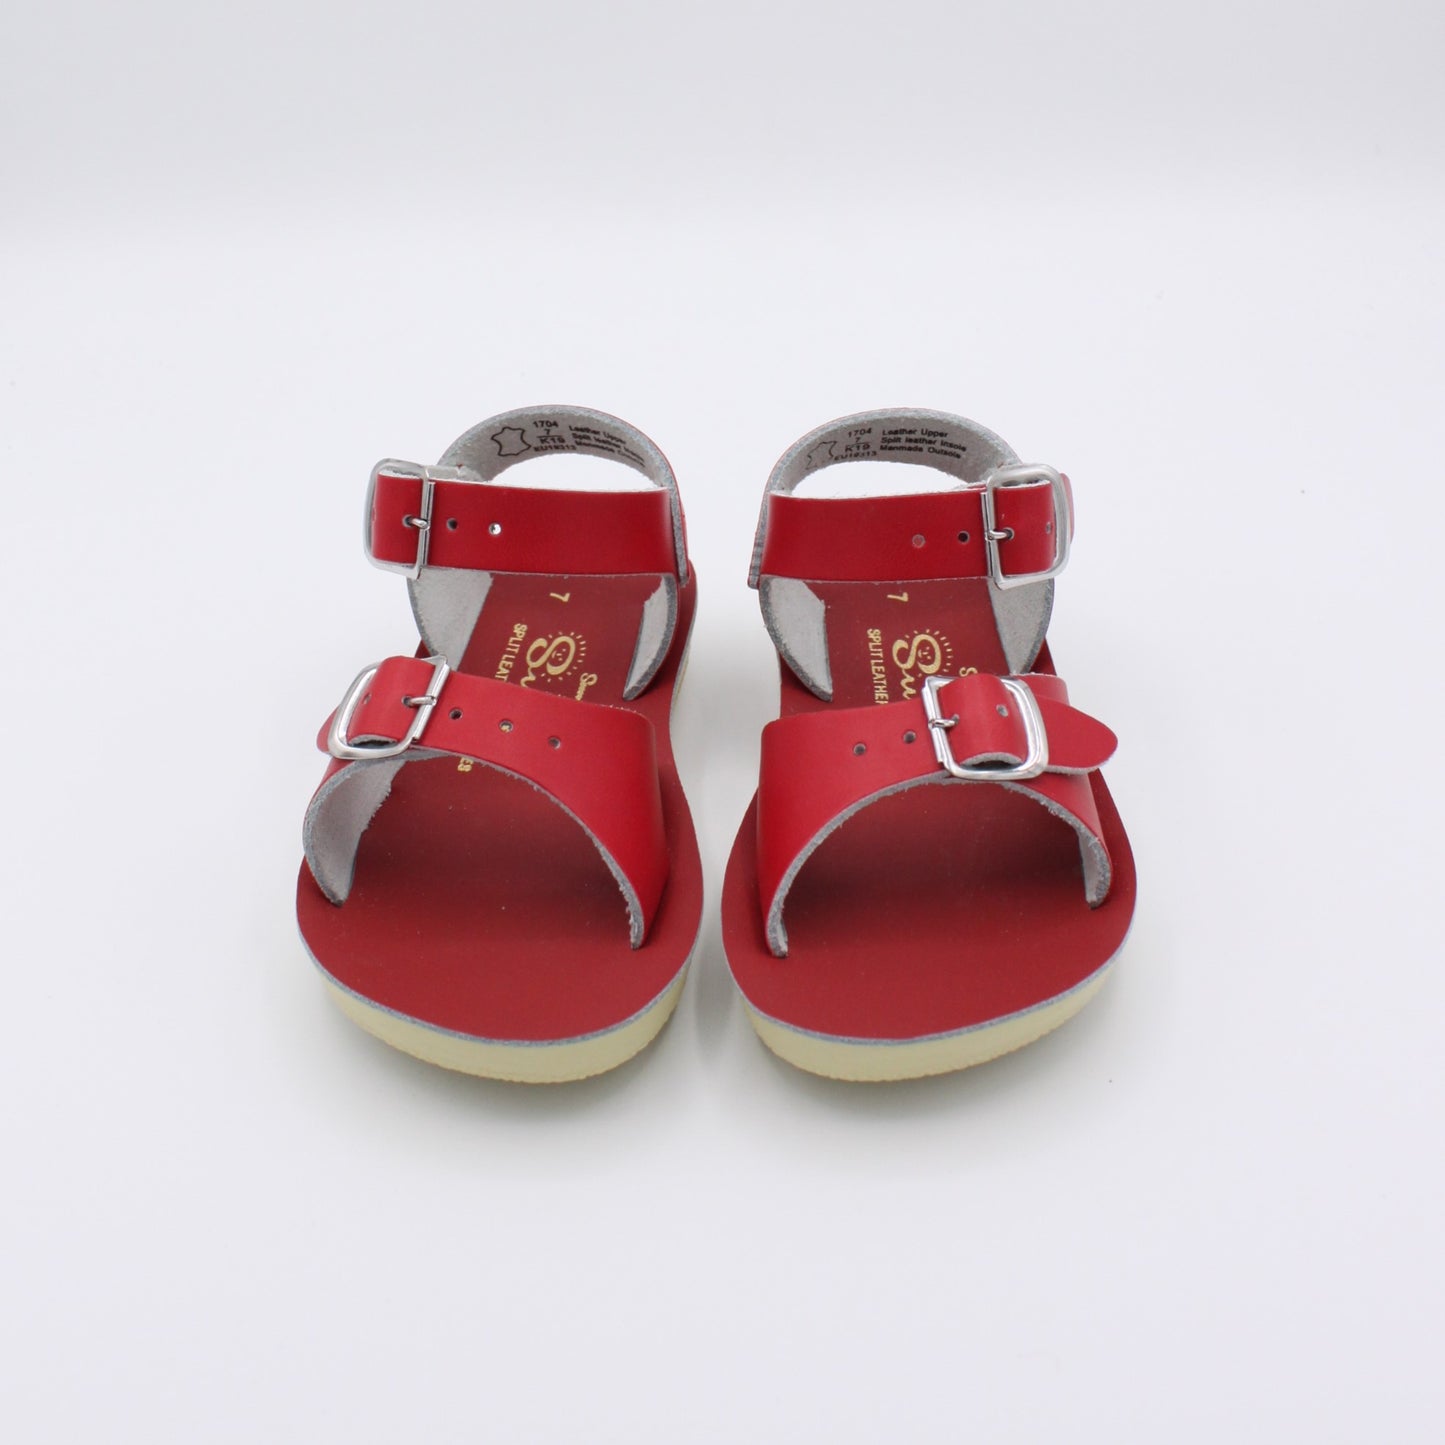 Pre-loved Sandals (EU23)